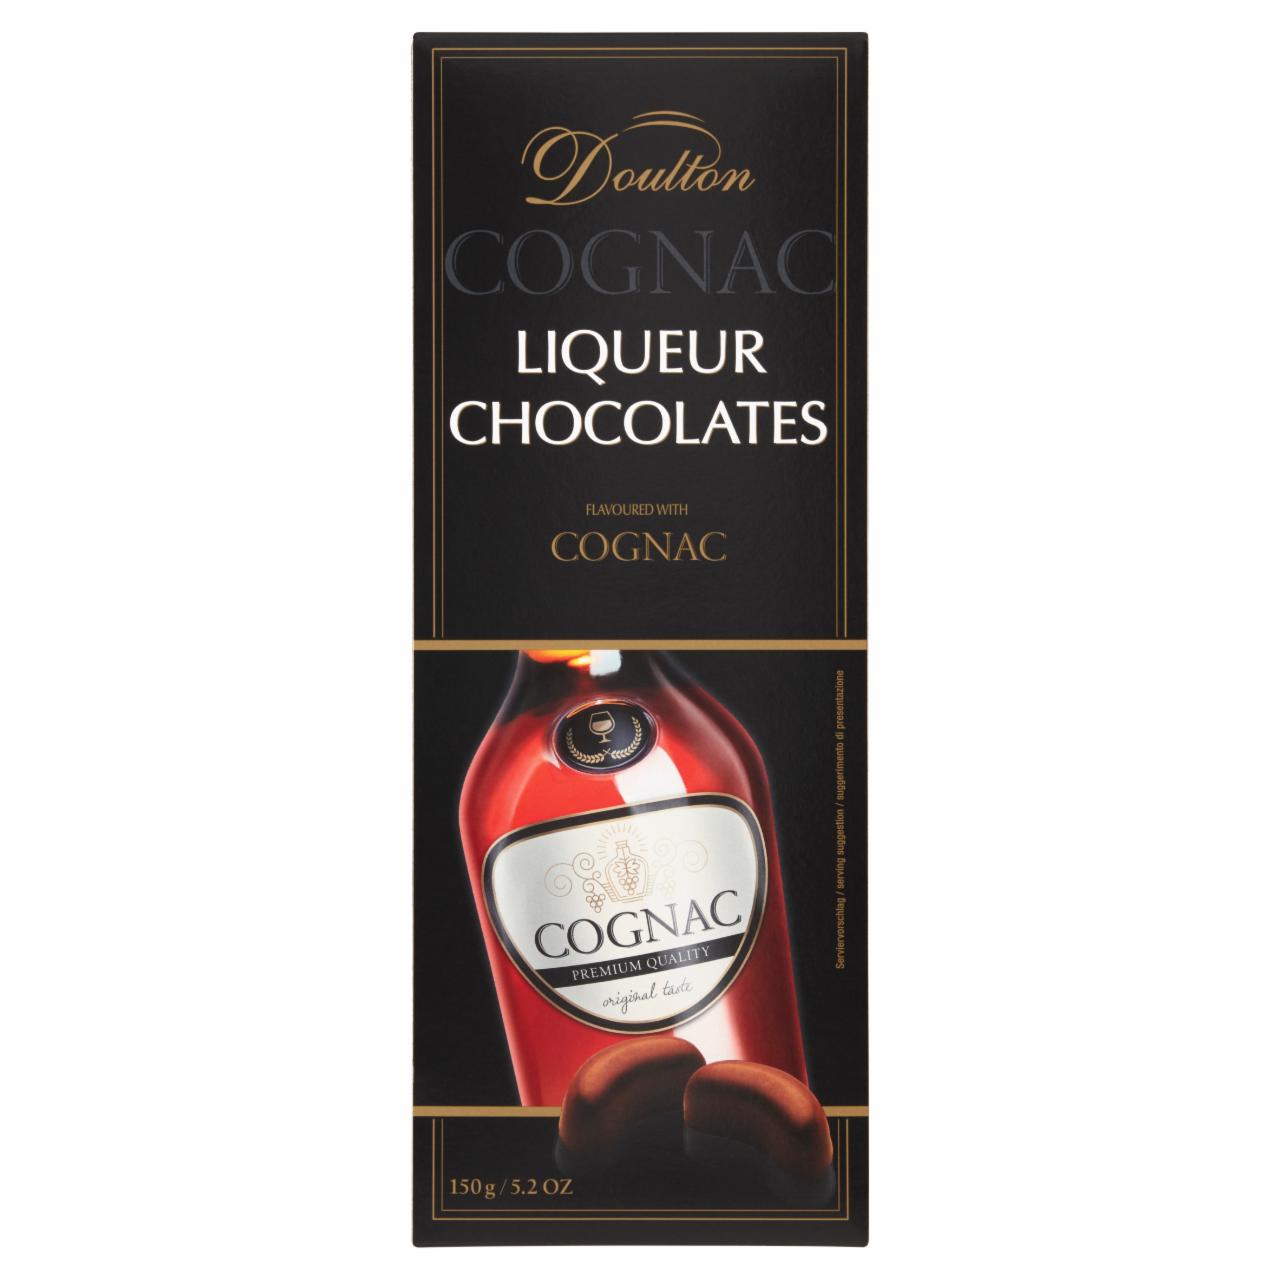 Képek - Doulton cognac-kal töltött csokoládé praliné 150 g